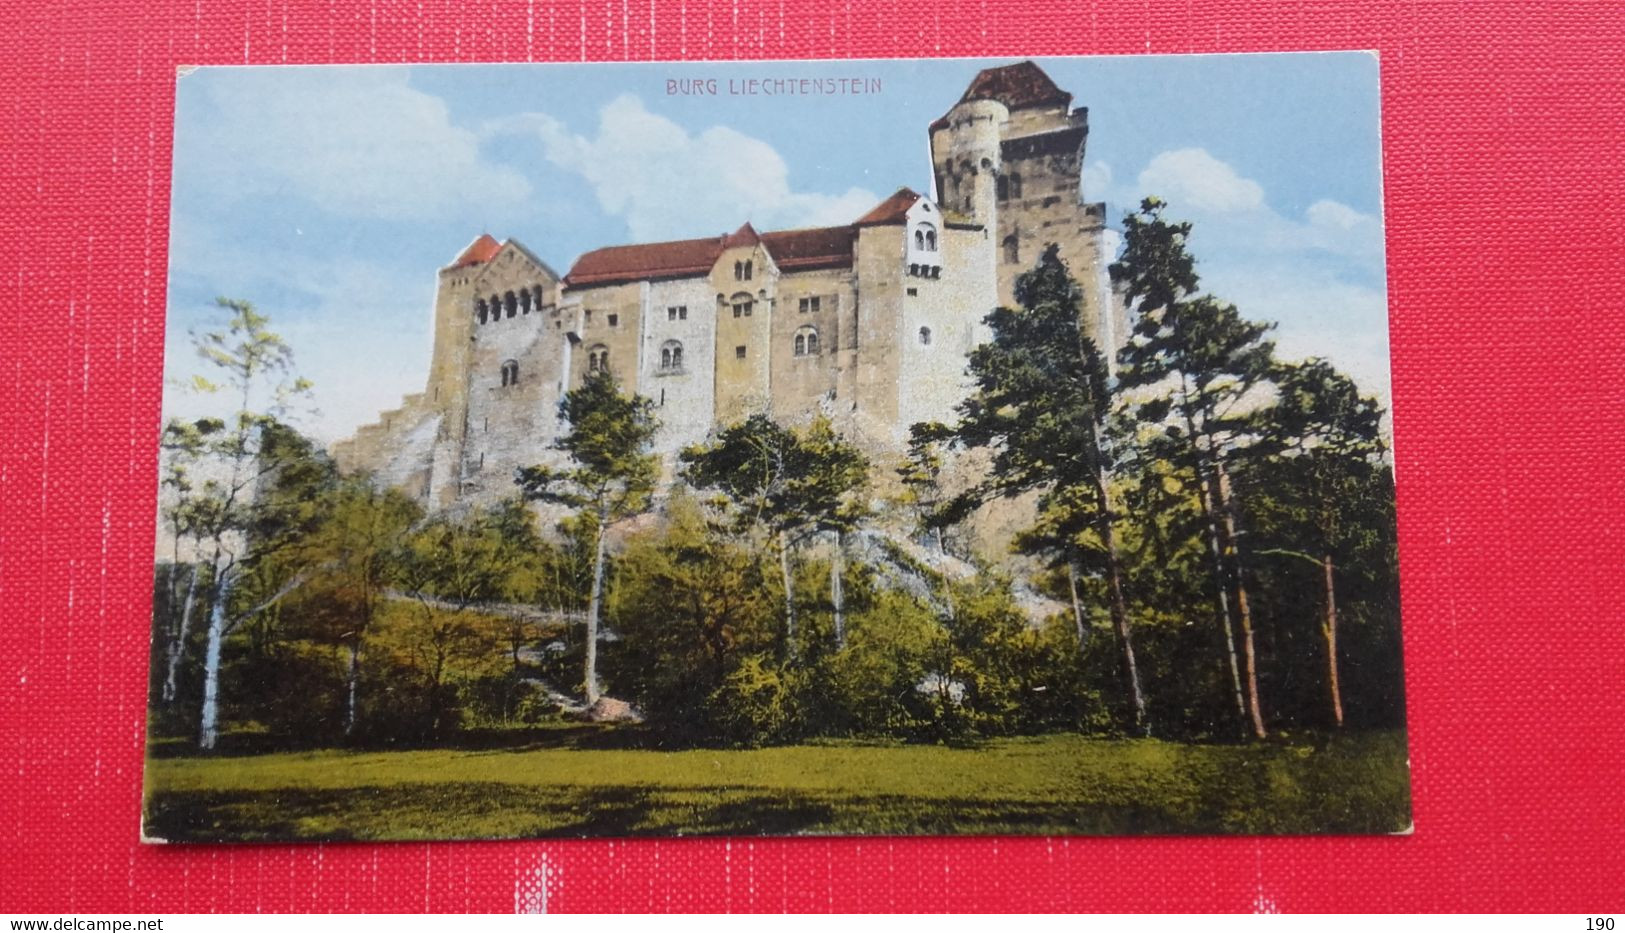 Burg Liechtenstein - Maria Enzersdorf